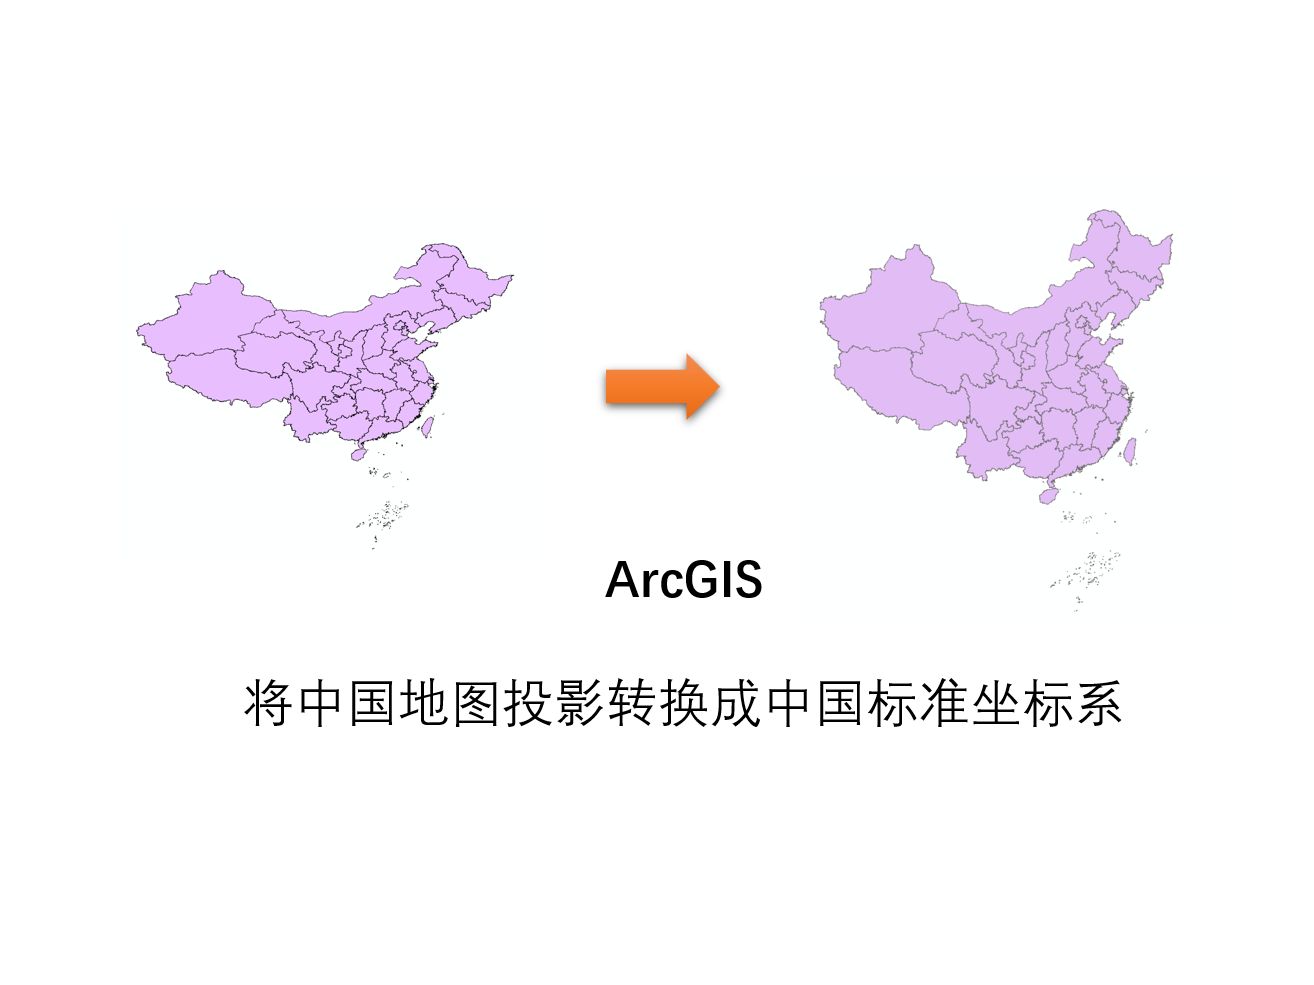 ArcGIS | 将中国地图投影转换成中国标准坐标系：阿尔伯斯投影正轴(等积割圆锥投影)